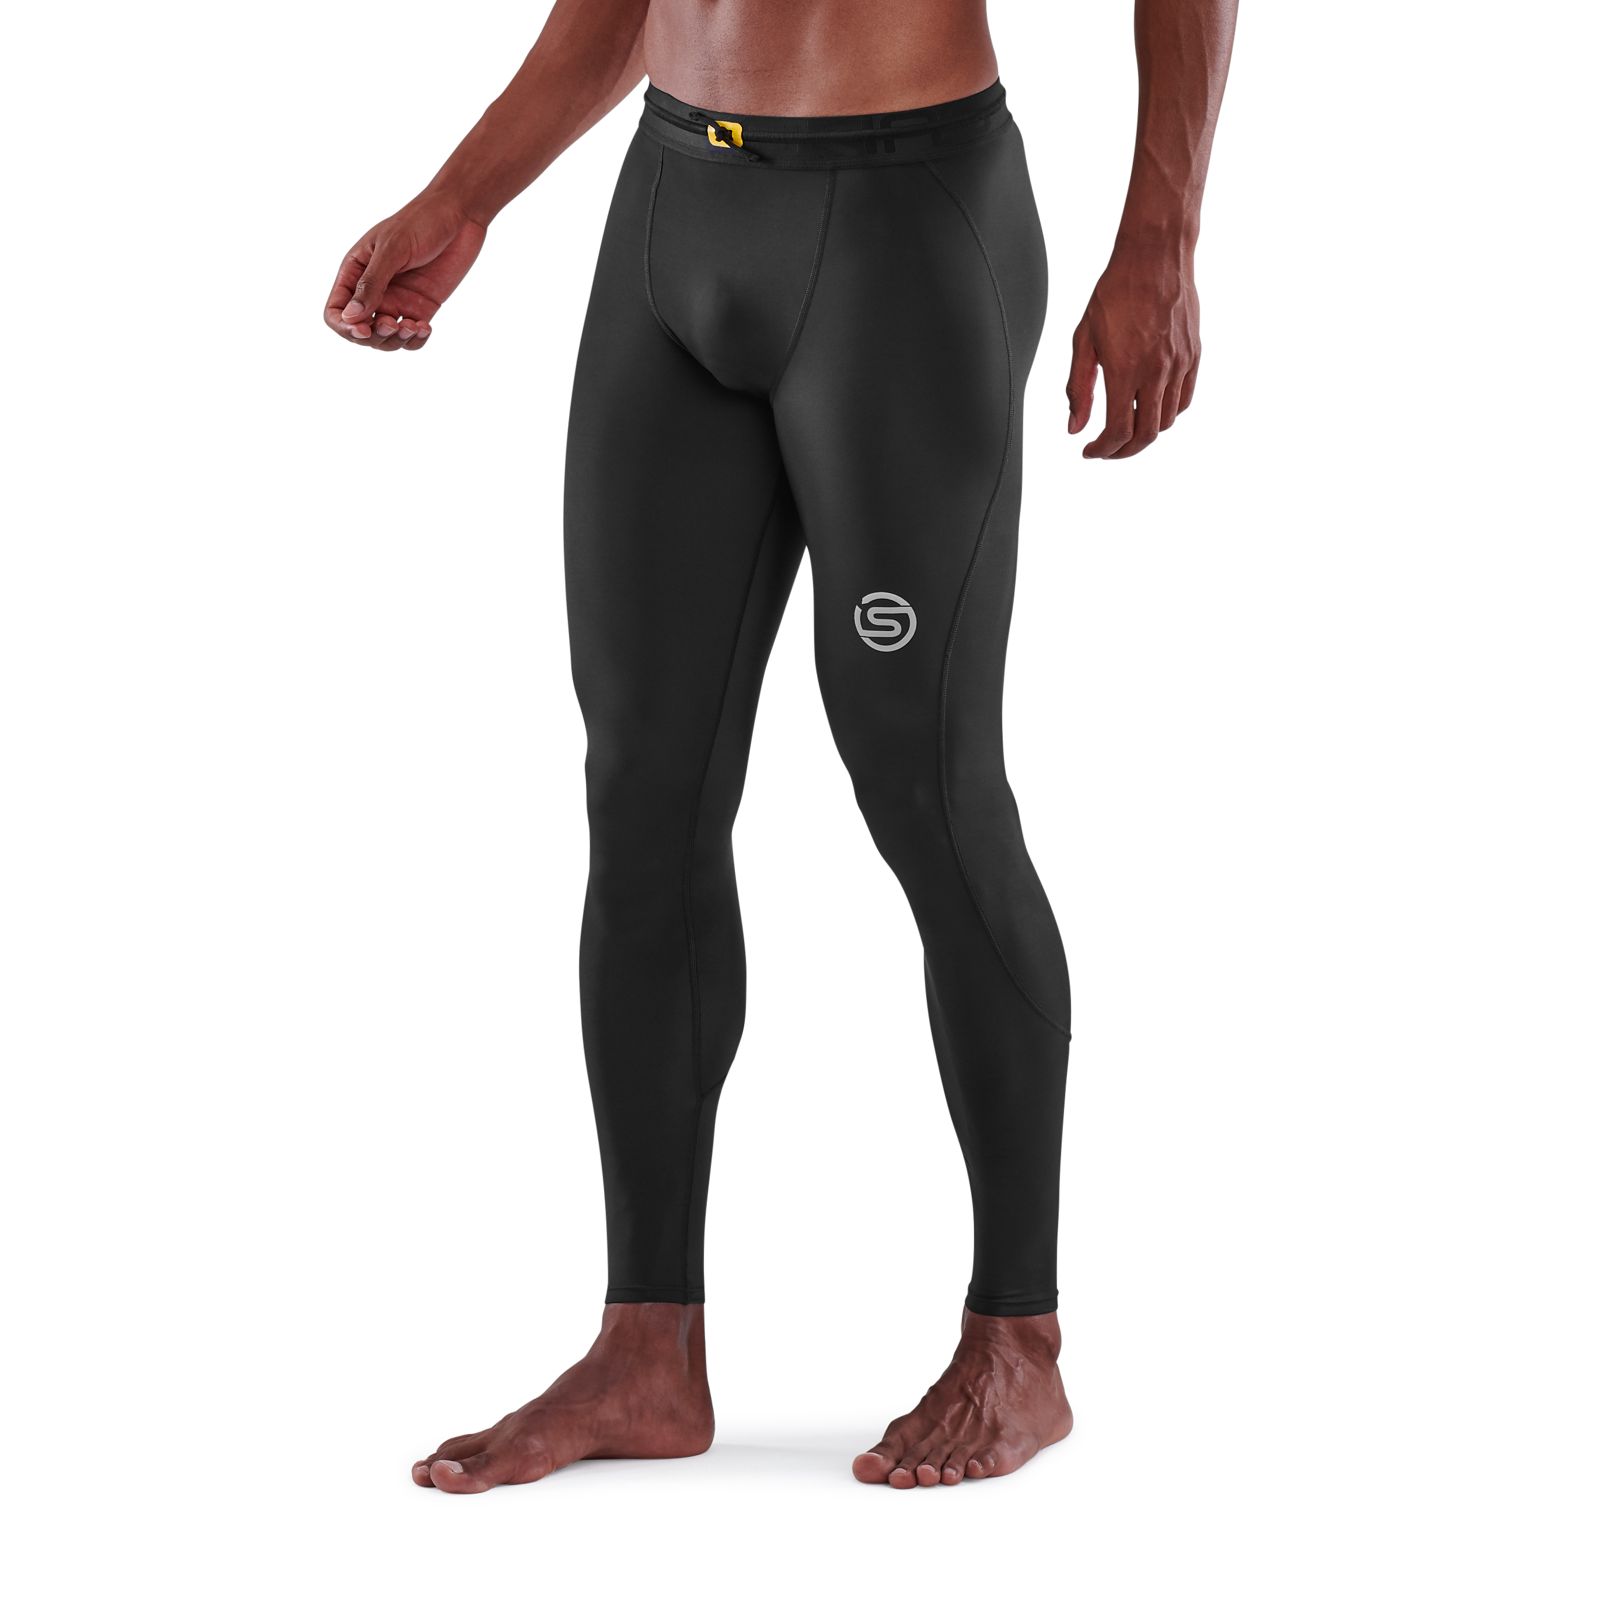 Men's full compression leggings - ALLRJ